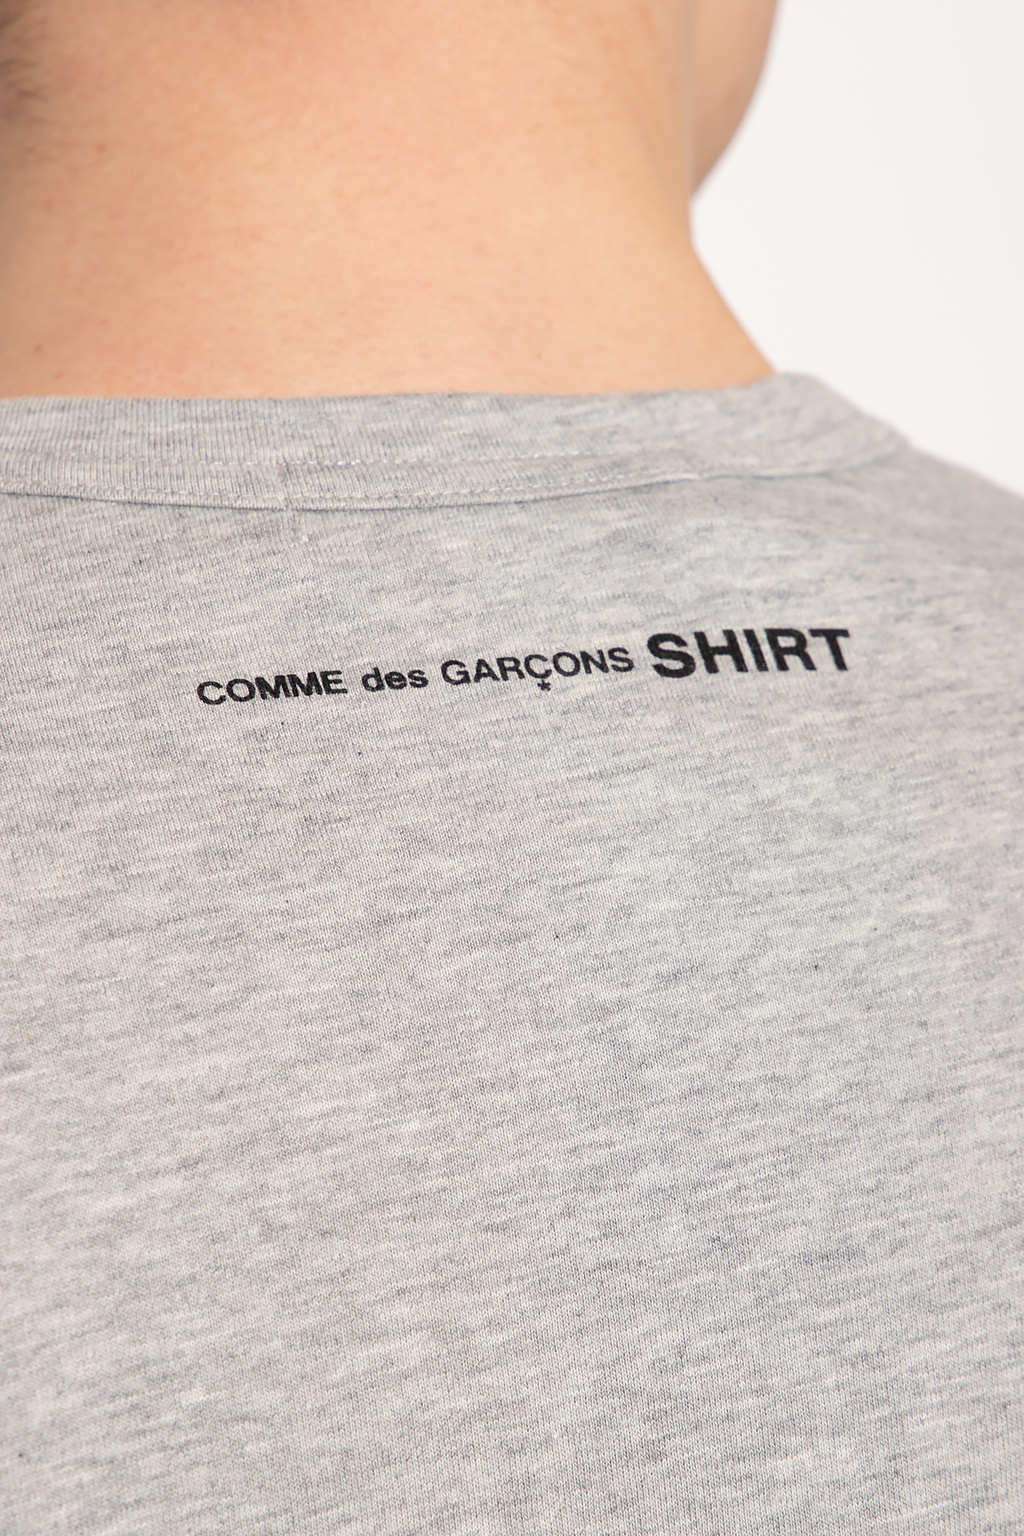 Comme des Garcons Shirt Logo T-shirt